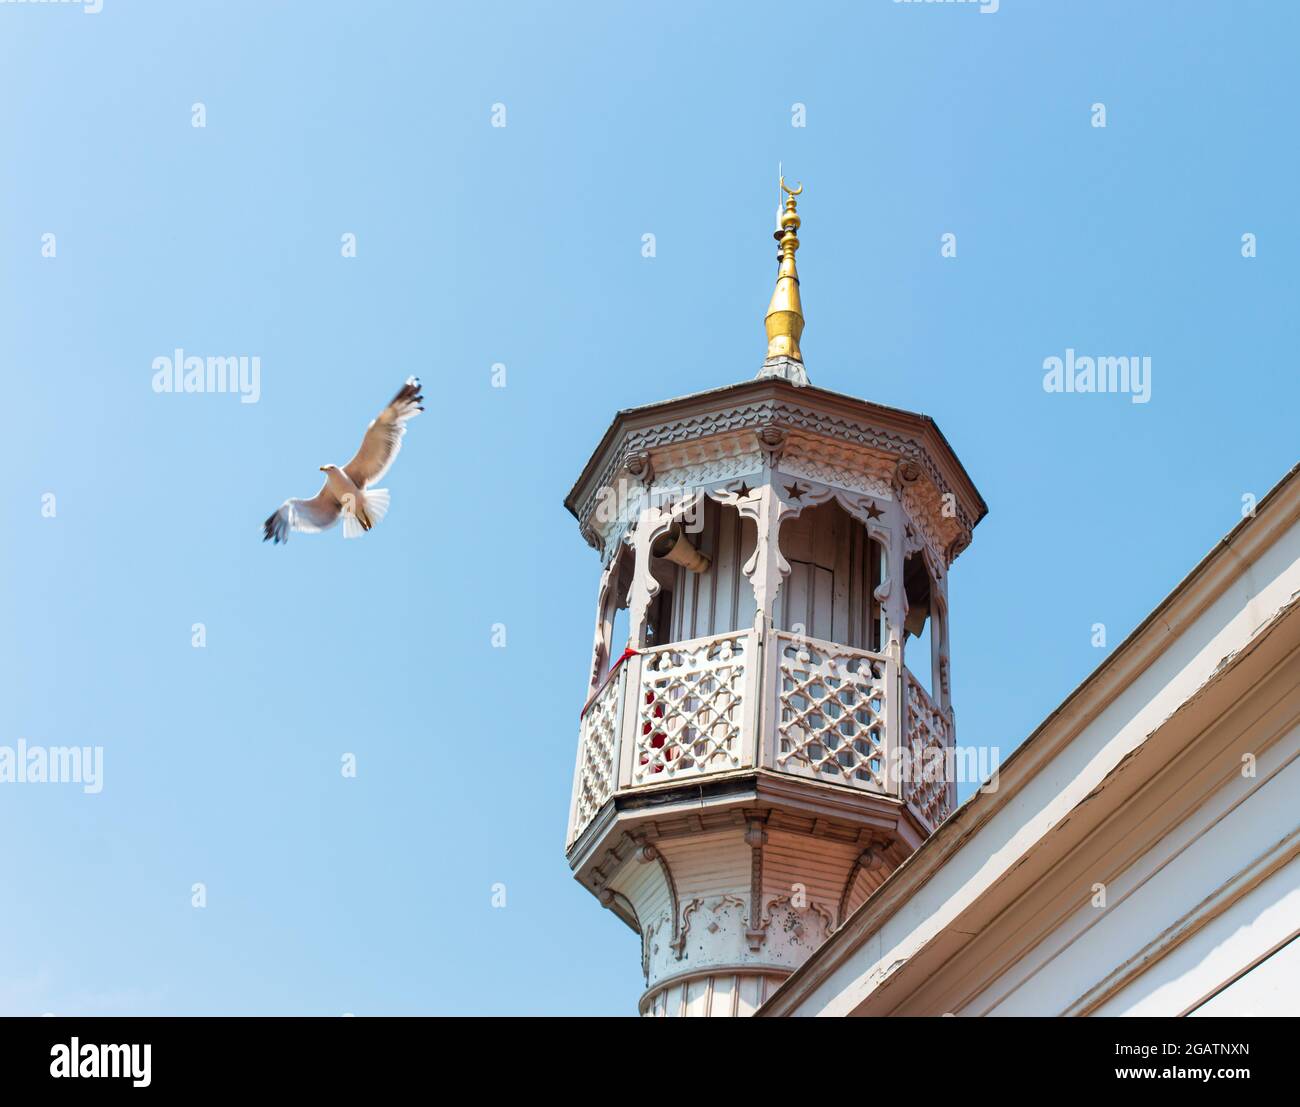 Minarett einer muslimischen Moschee mit Möwe auf dem klaren blauen Himmel Hintergrund. Ein antikes Minarett mit antiken Motiven. Stockfoto